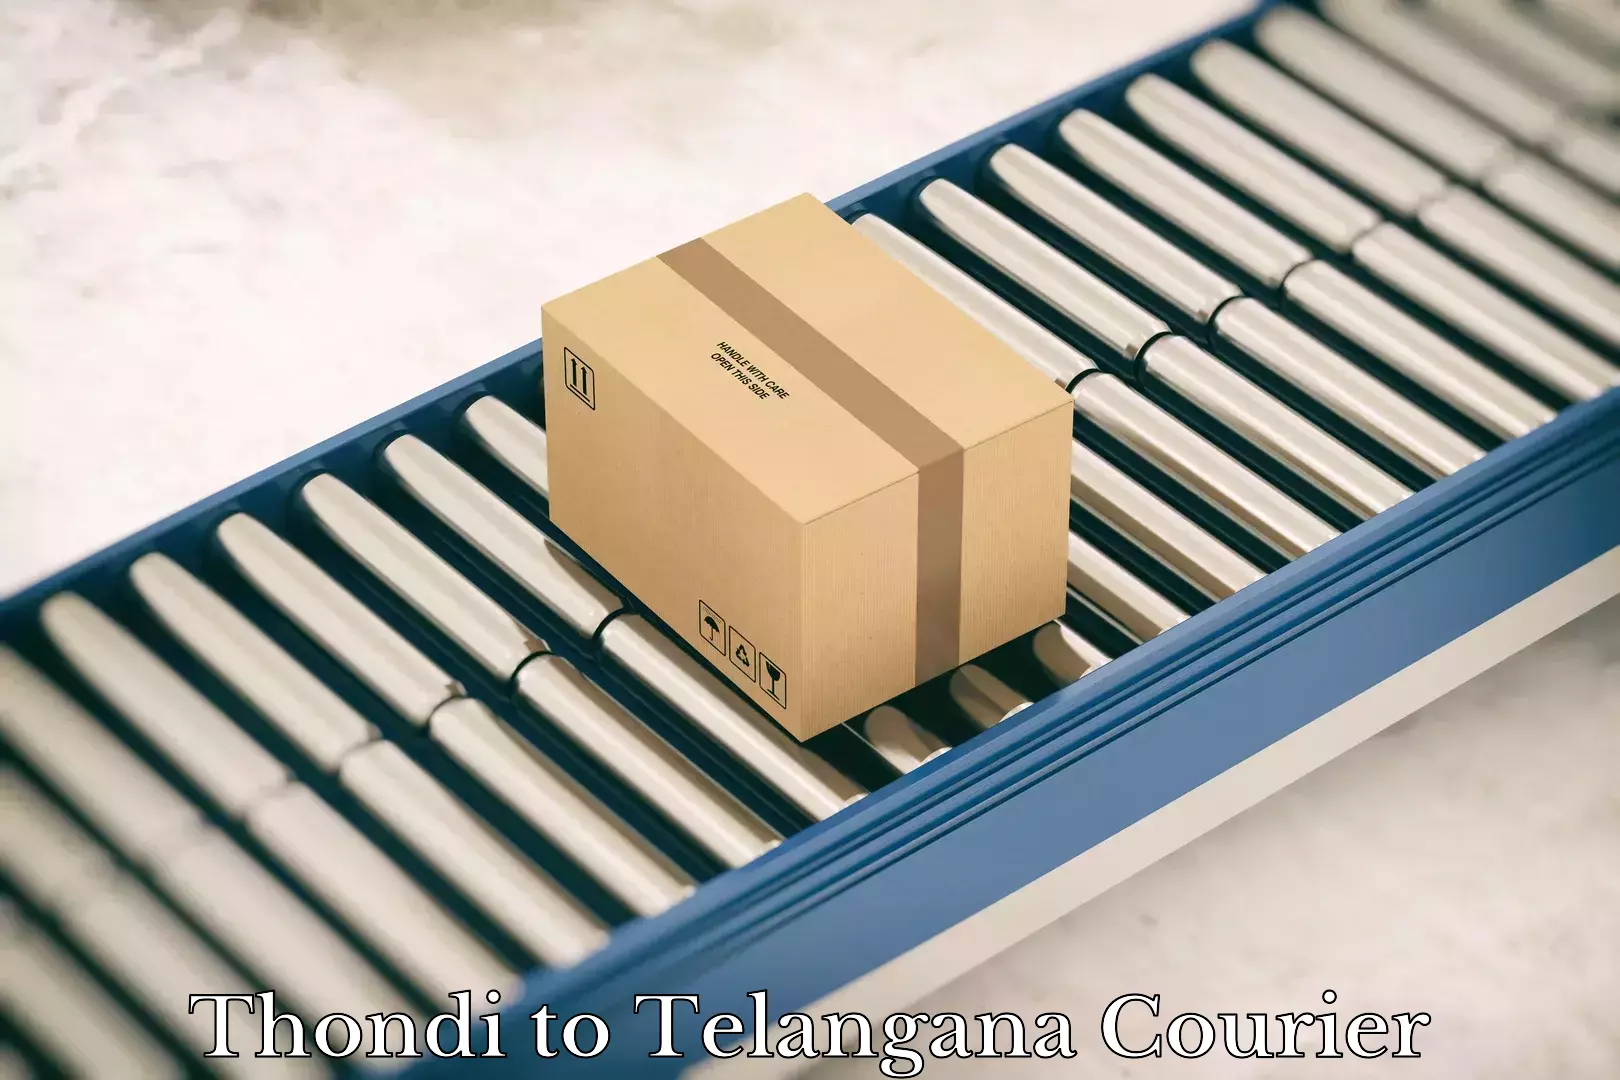 Individual parcel service Thondi to Telangana